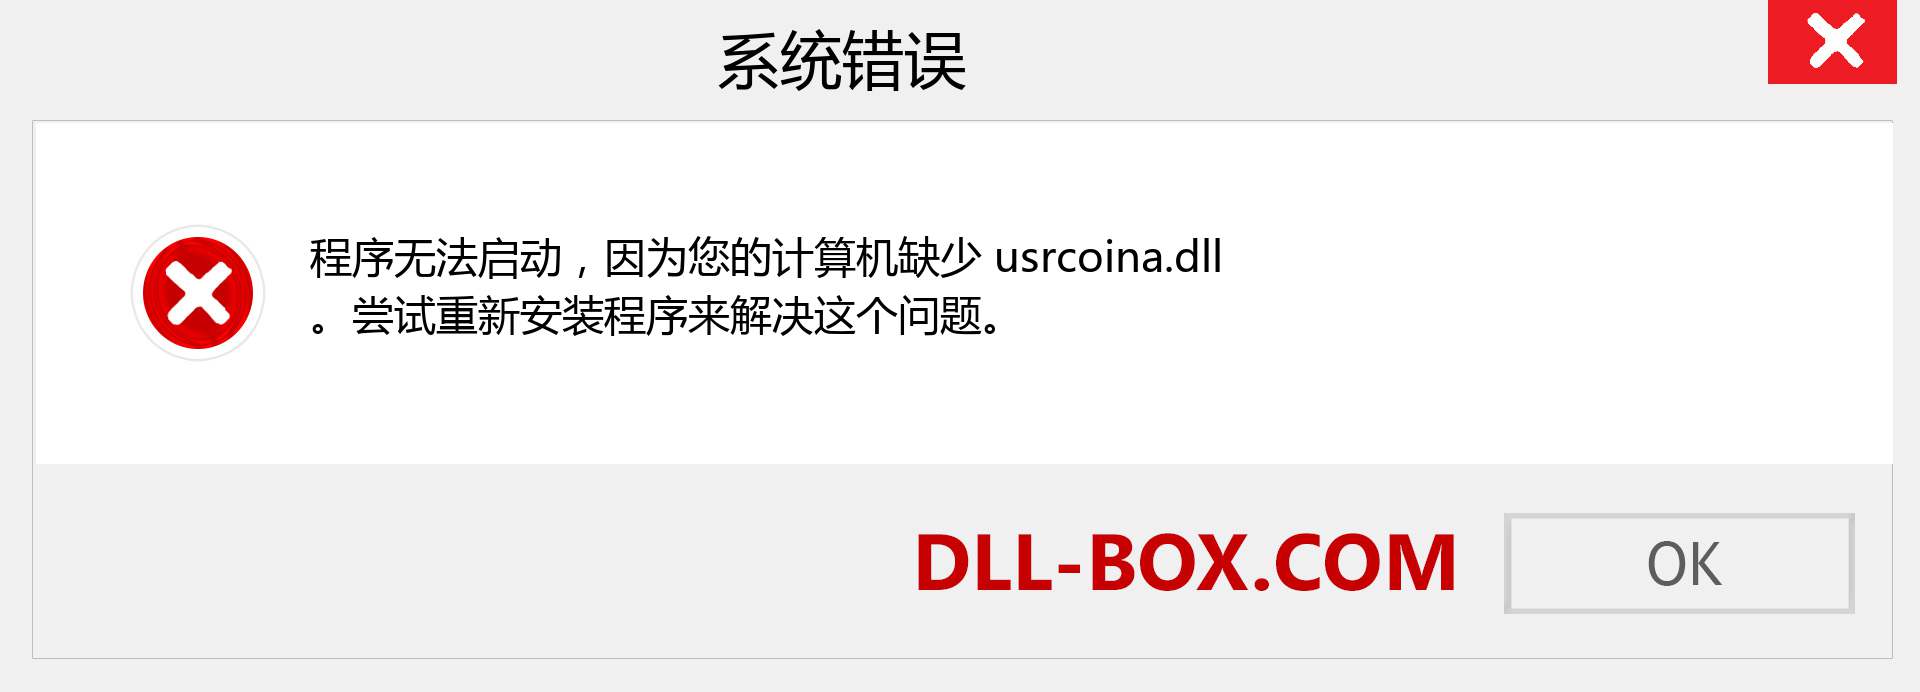 usrcoina.dll 文件丢失？。 适用于 Windows 7、8、10 的下载 - 修复 Windows、照片、图像上的 usrcoina dll 丢失错误